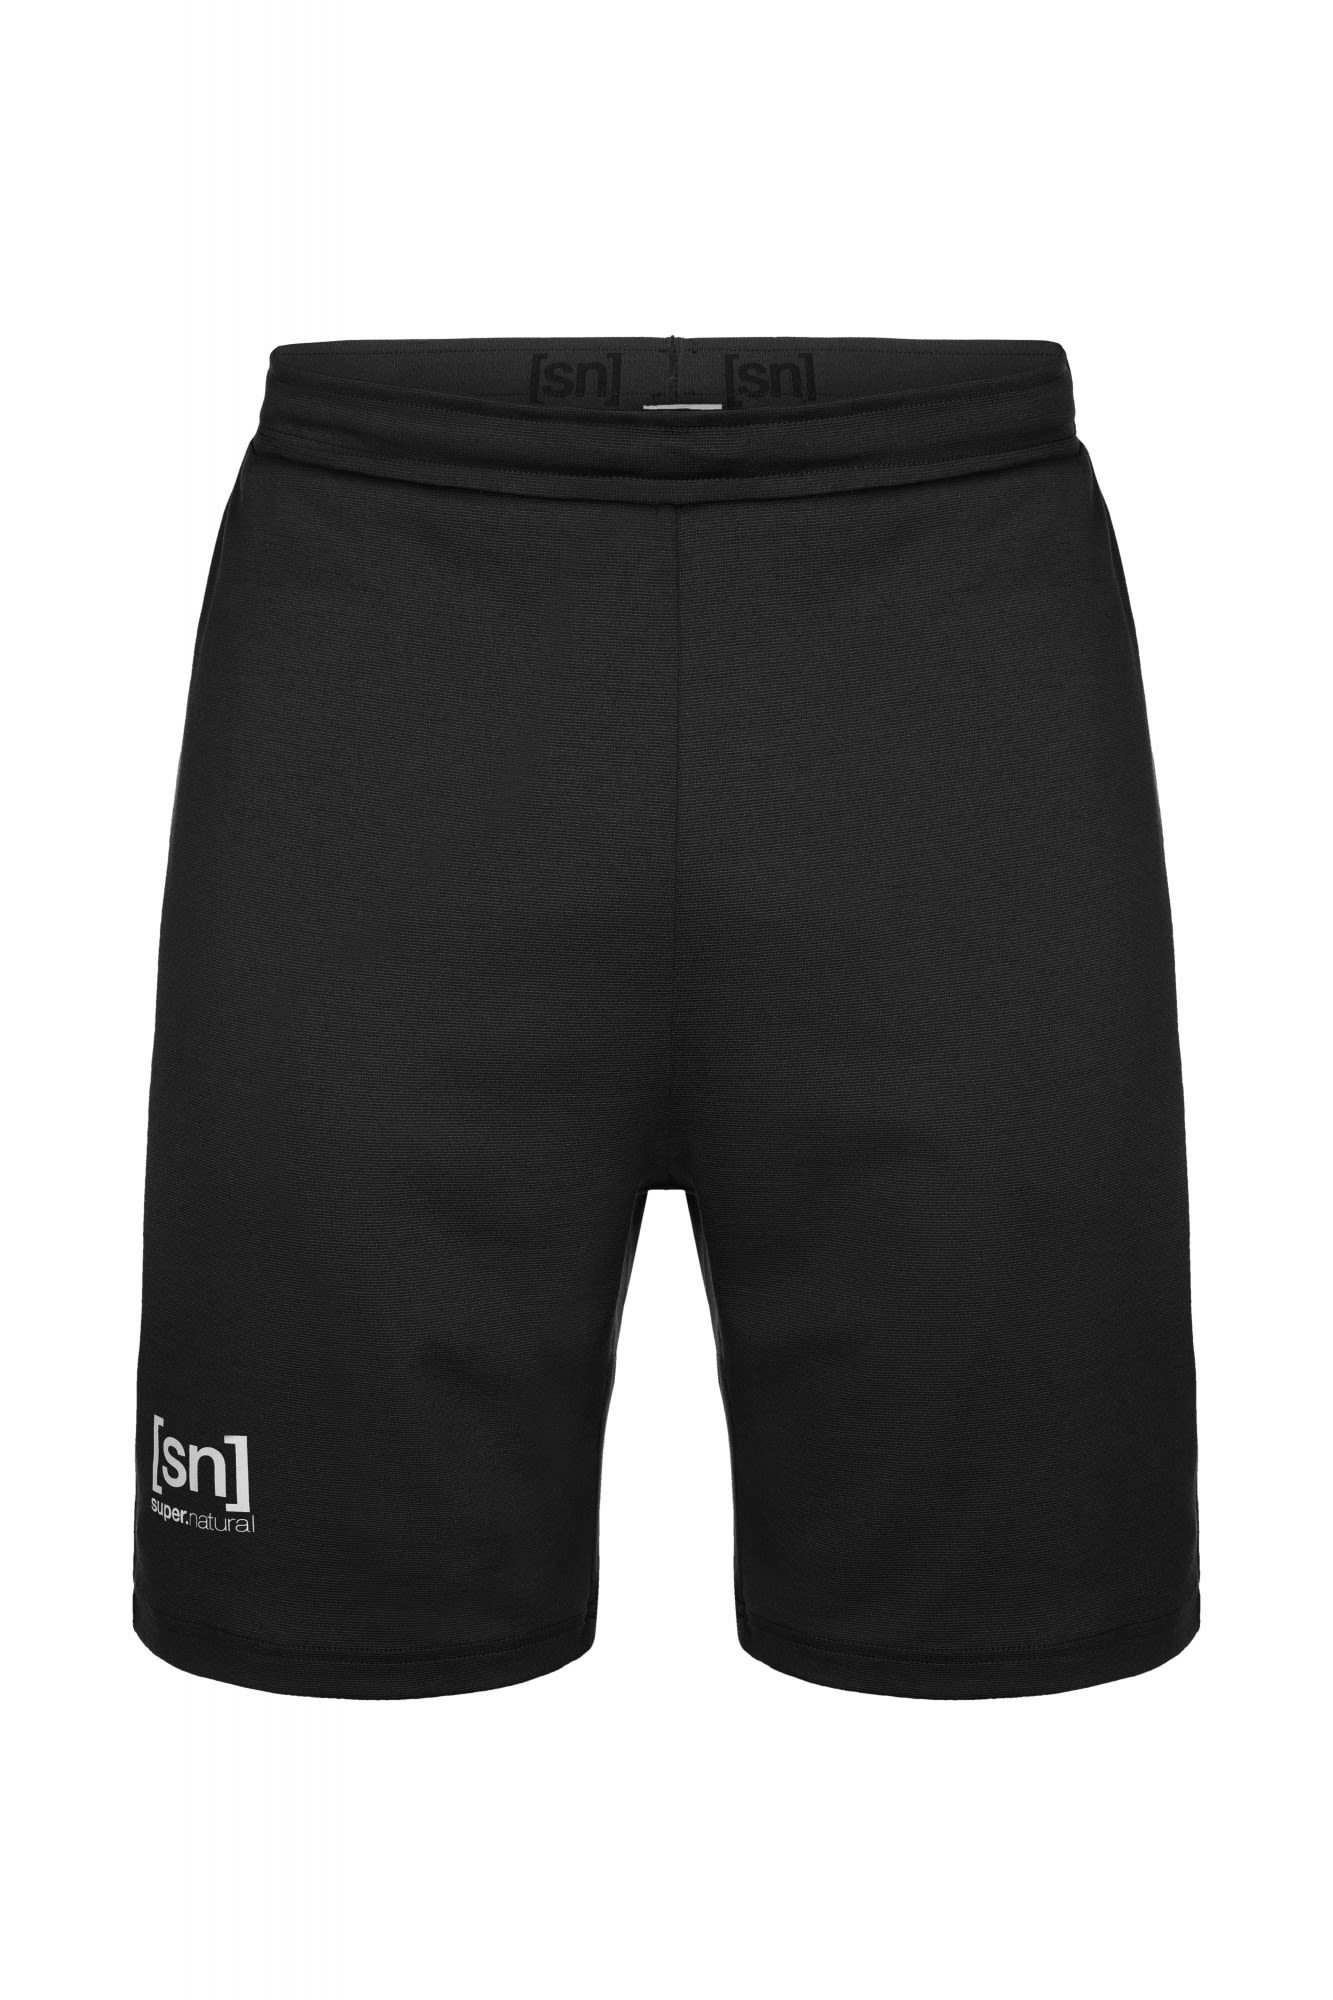 SUPER.NATURAL Strandshorts Super.natural M Movement Shorts Herren Shorts Grey Black | 